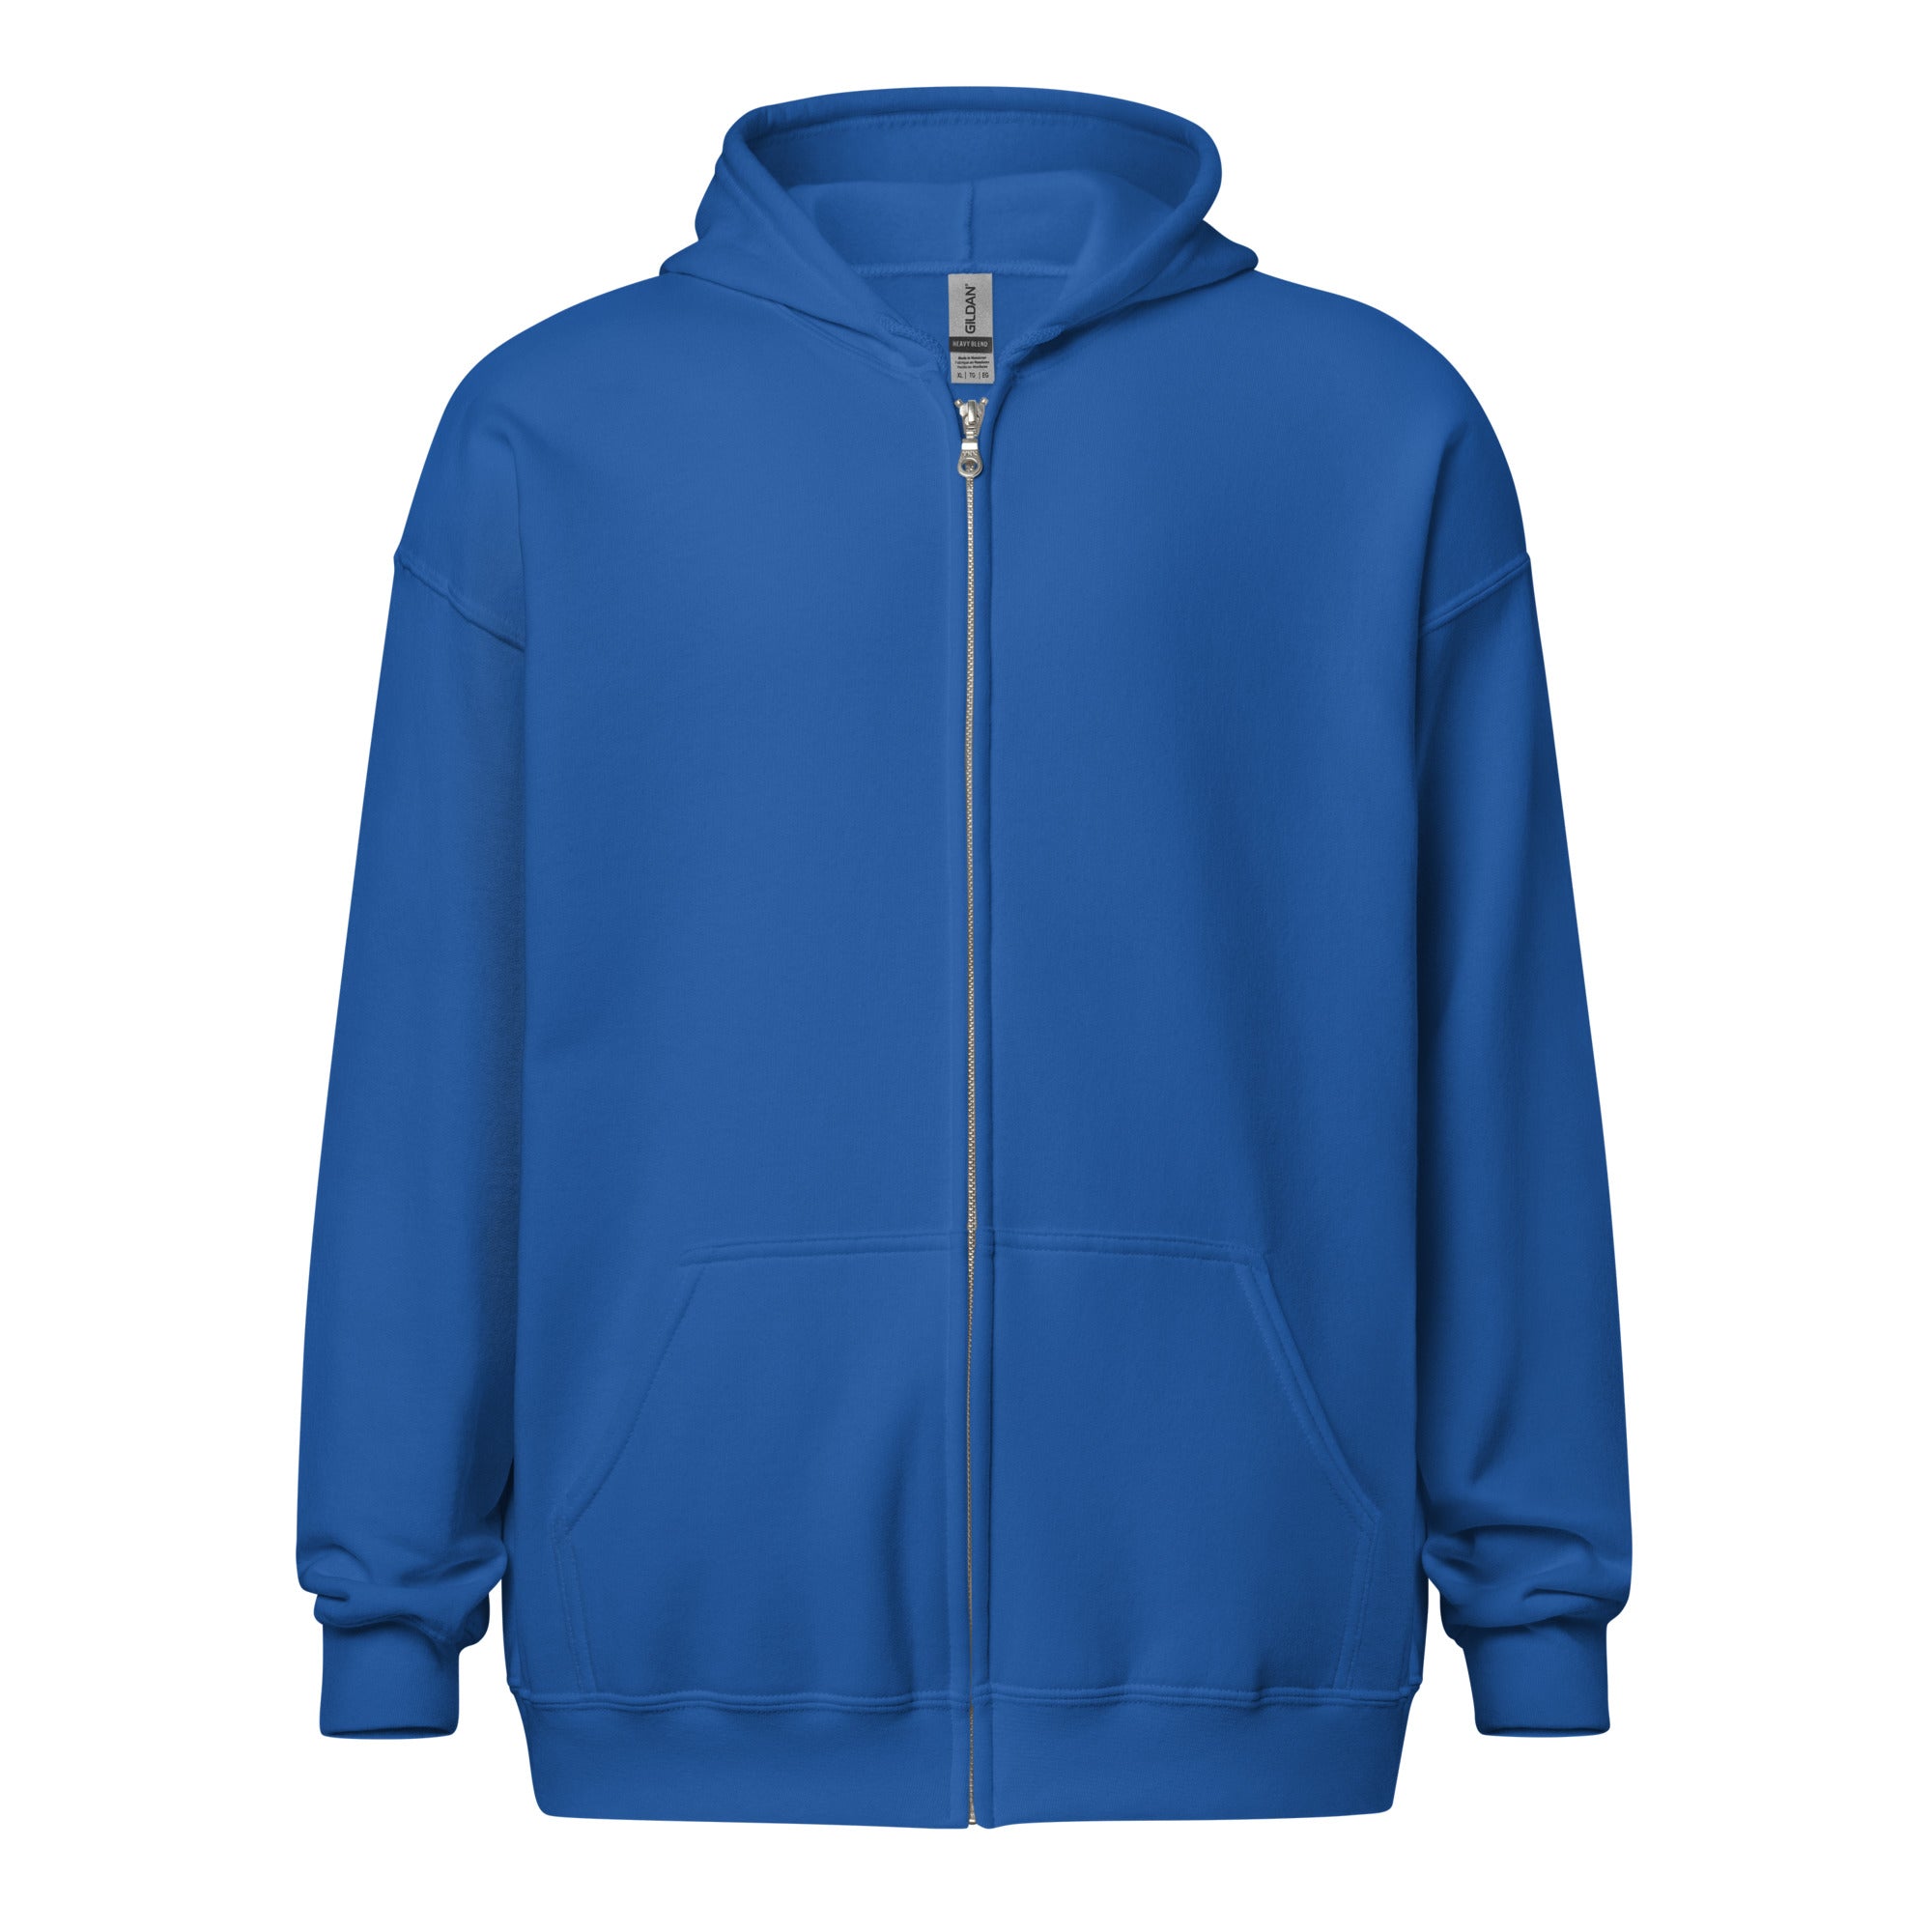 unisex-heavy-blend-zip-hoodie-royal-front-651c9faeb3691.jpg